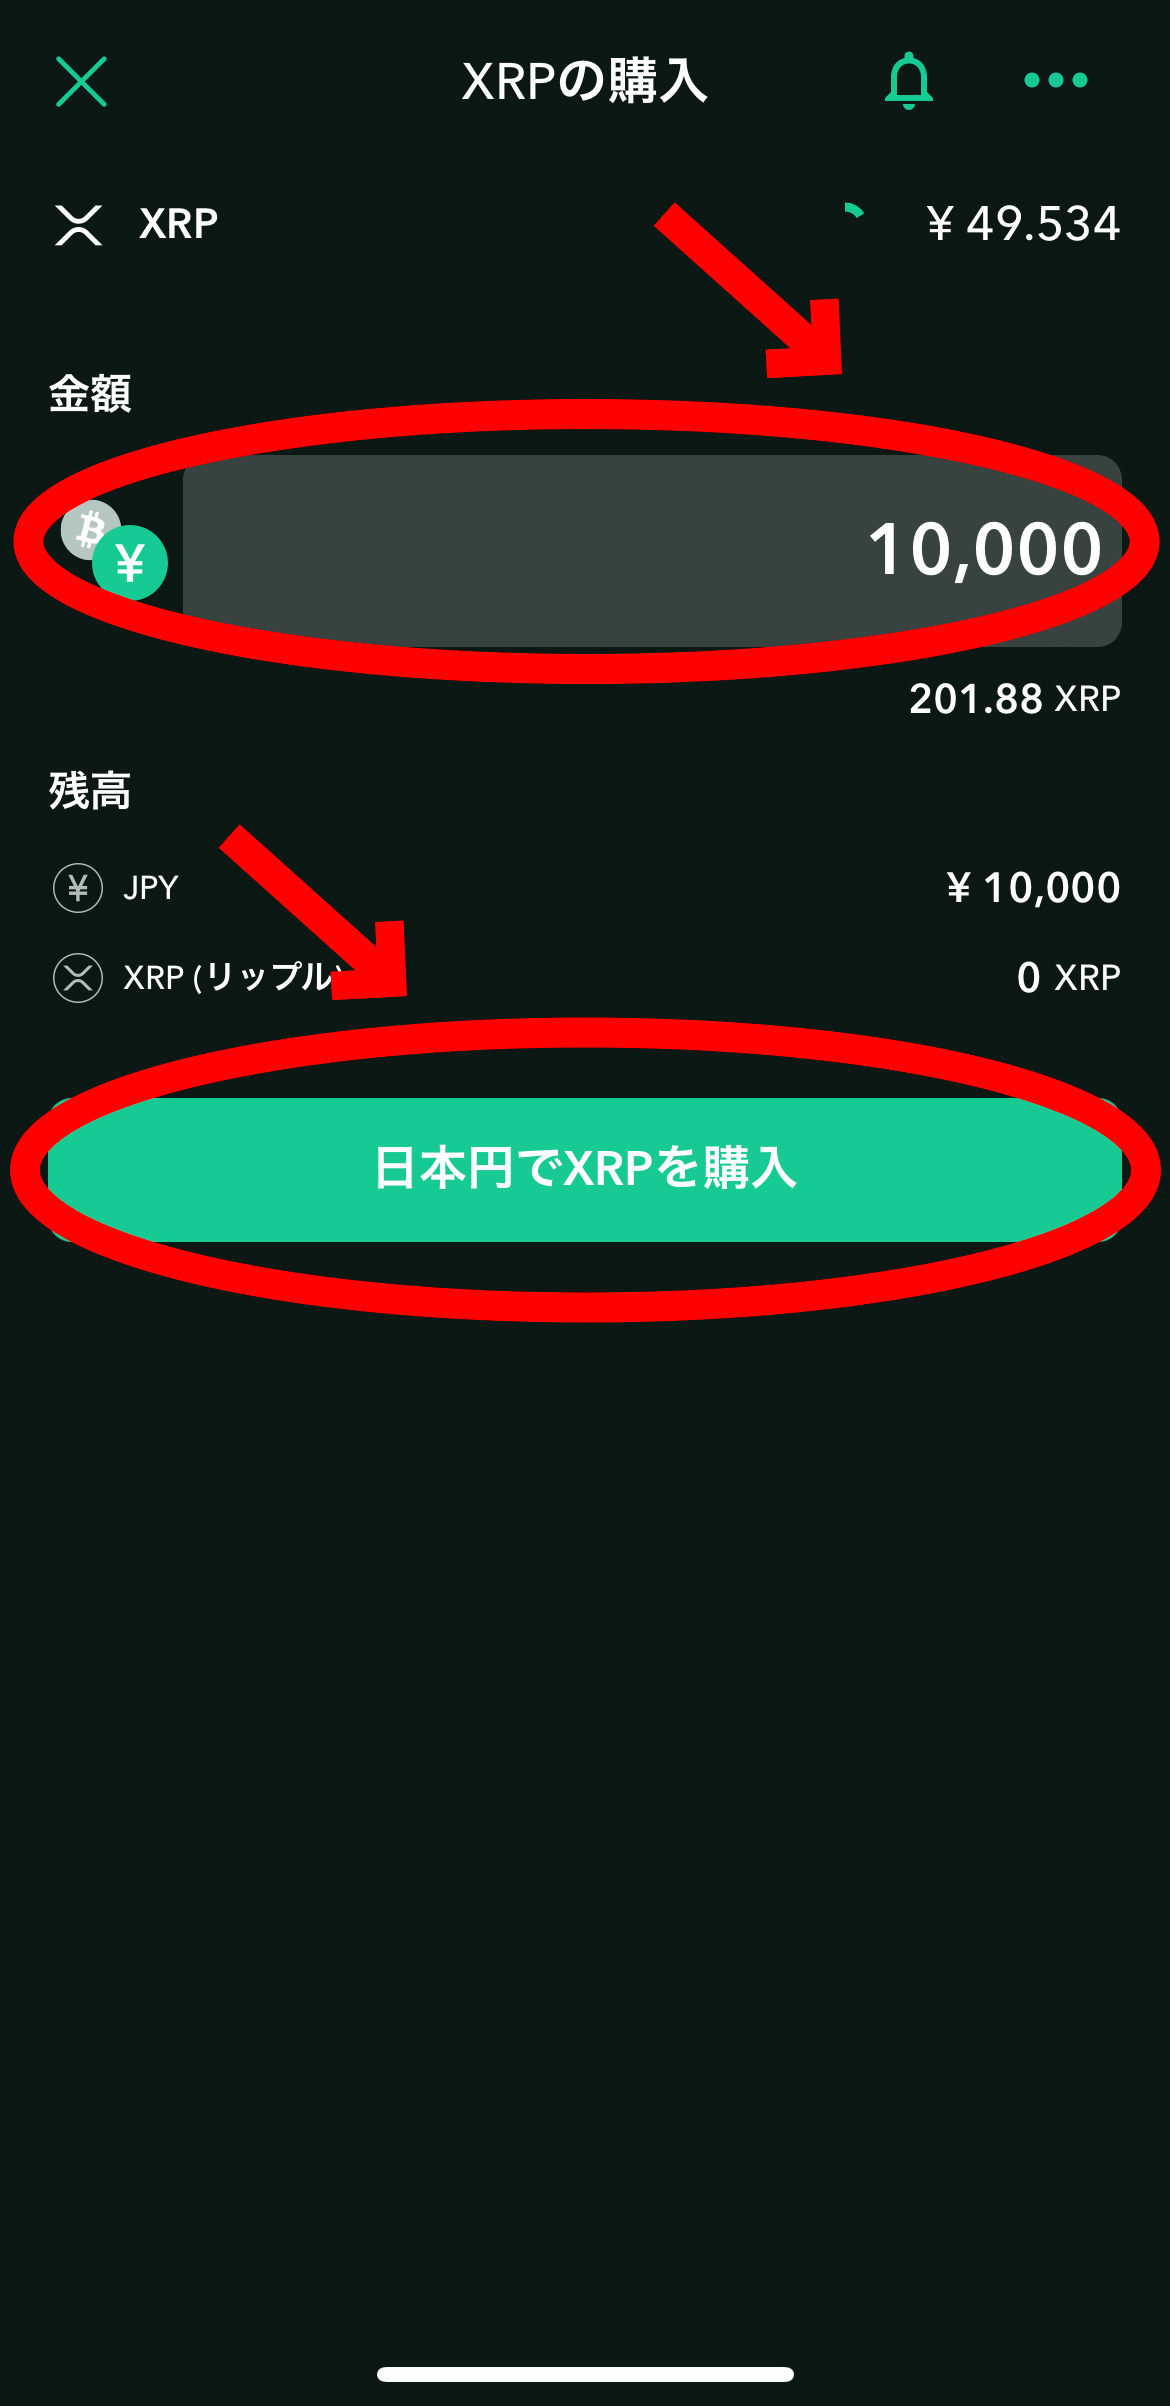 BINANCEの登録方法から仮想通貨購入まで【スマホで簡単】日本円でXRPを購入をクリックします。